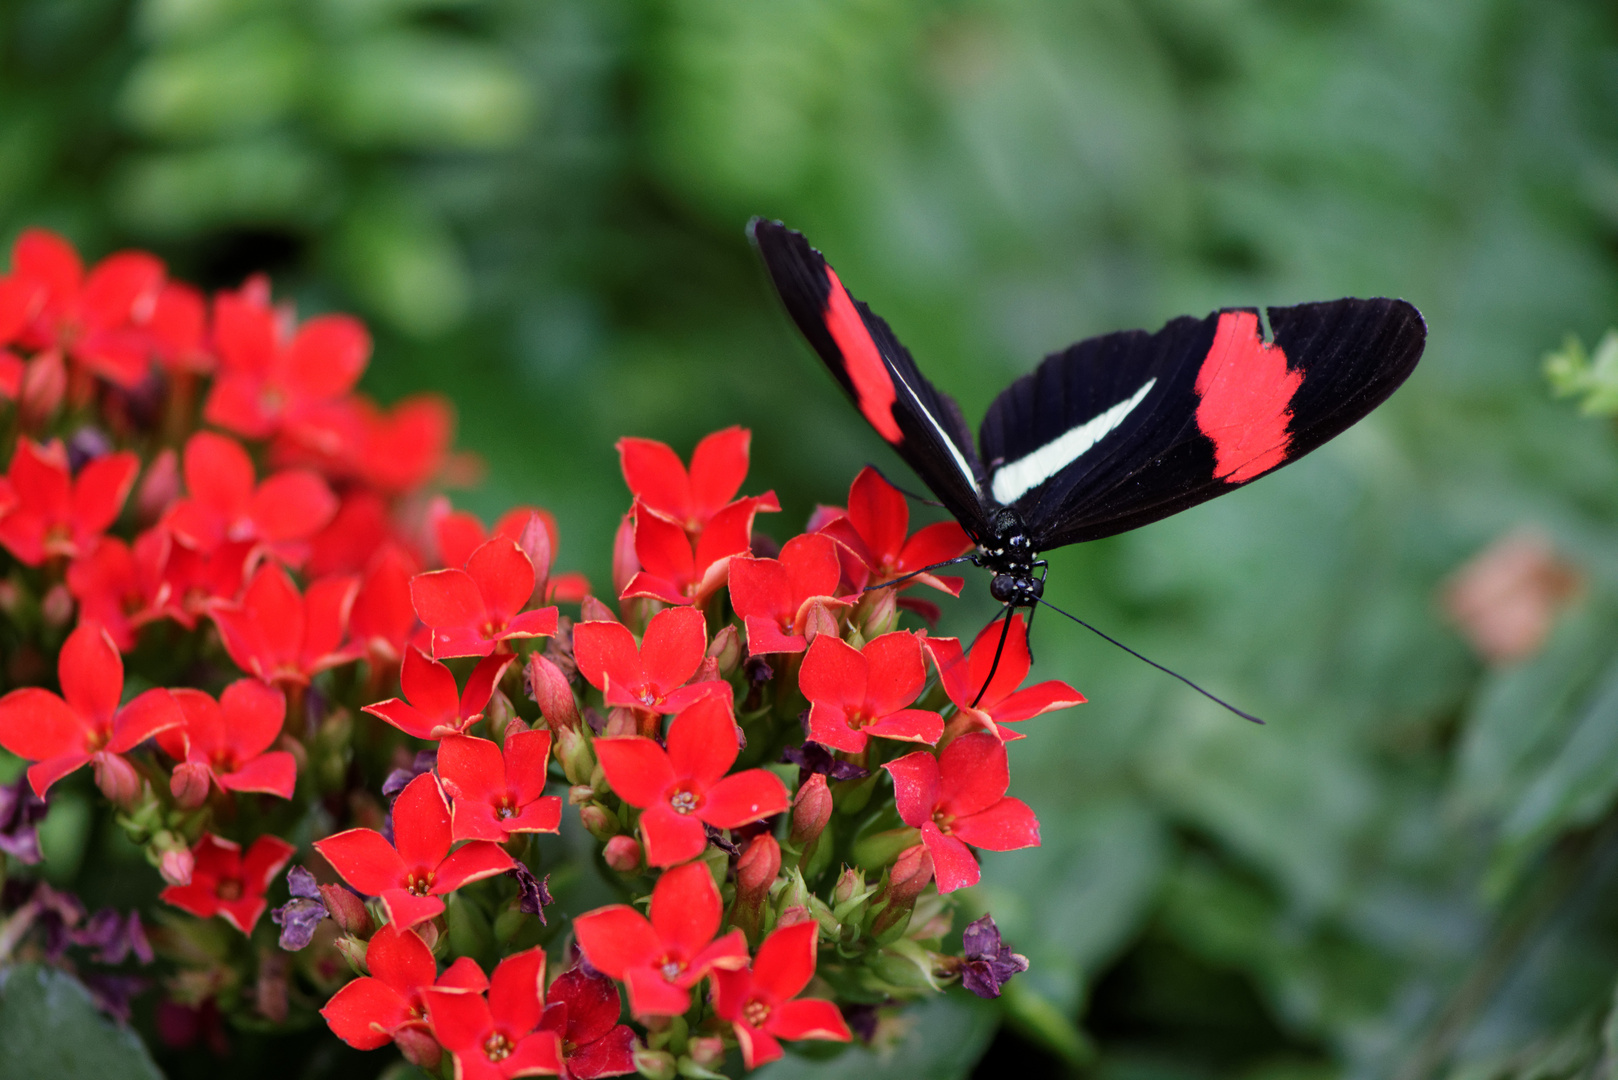 Noch ein schwarzer Schmetterling, diesmal mit roten Streifen (Passionsblumenfalter)